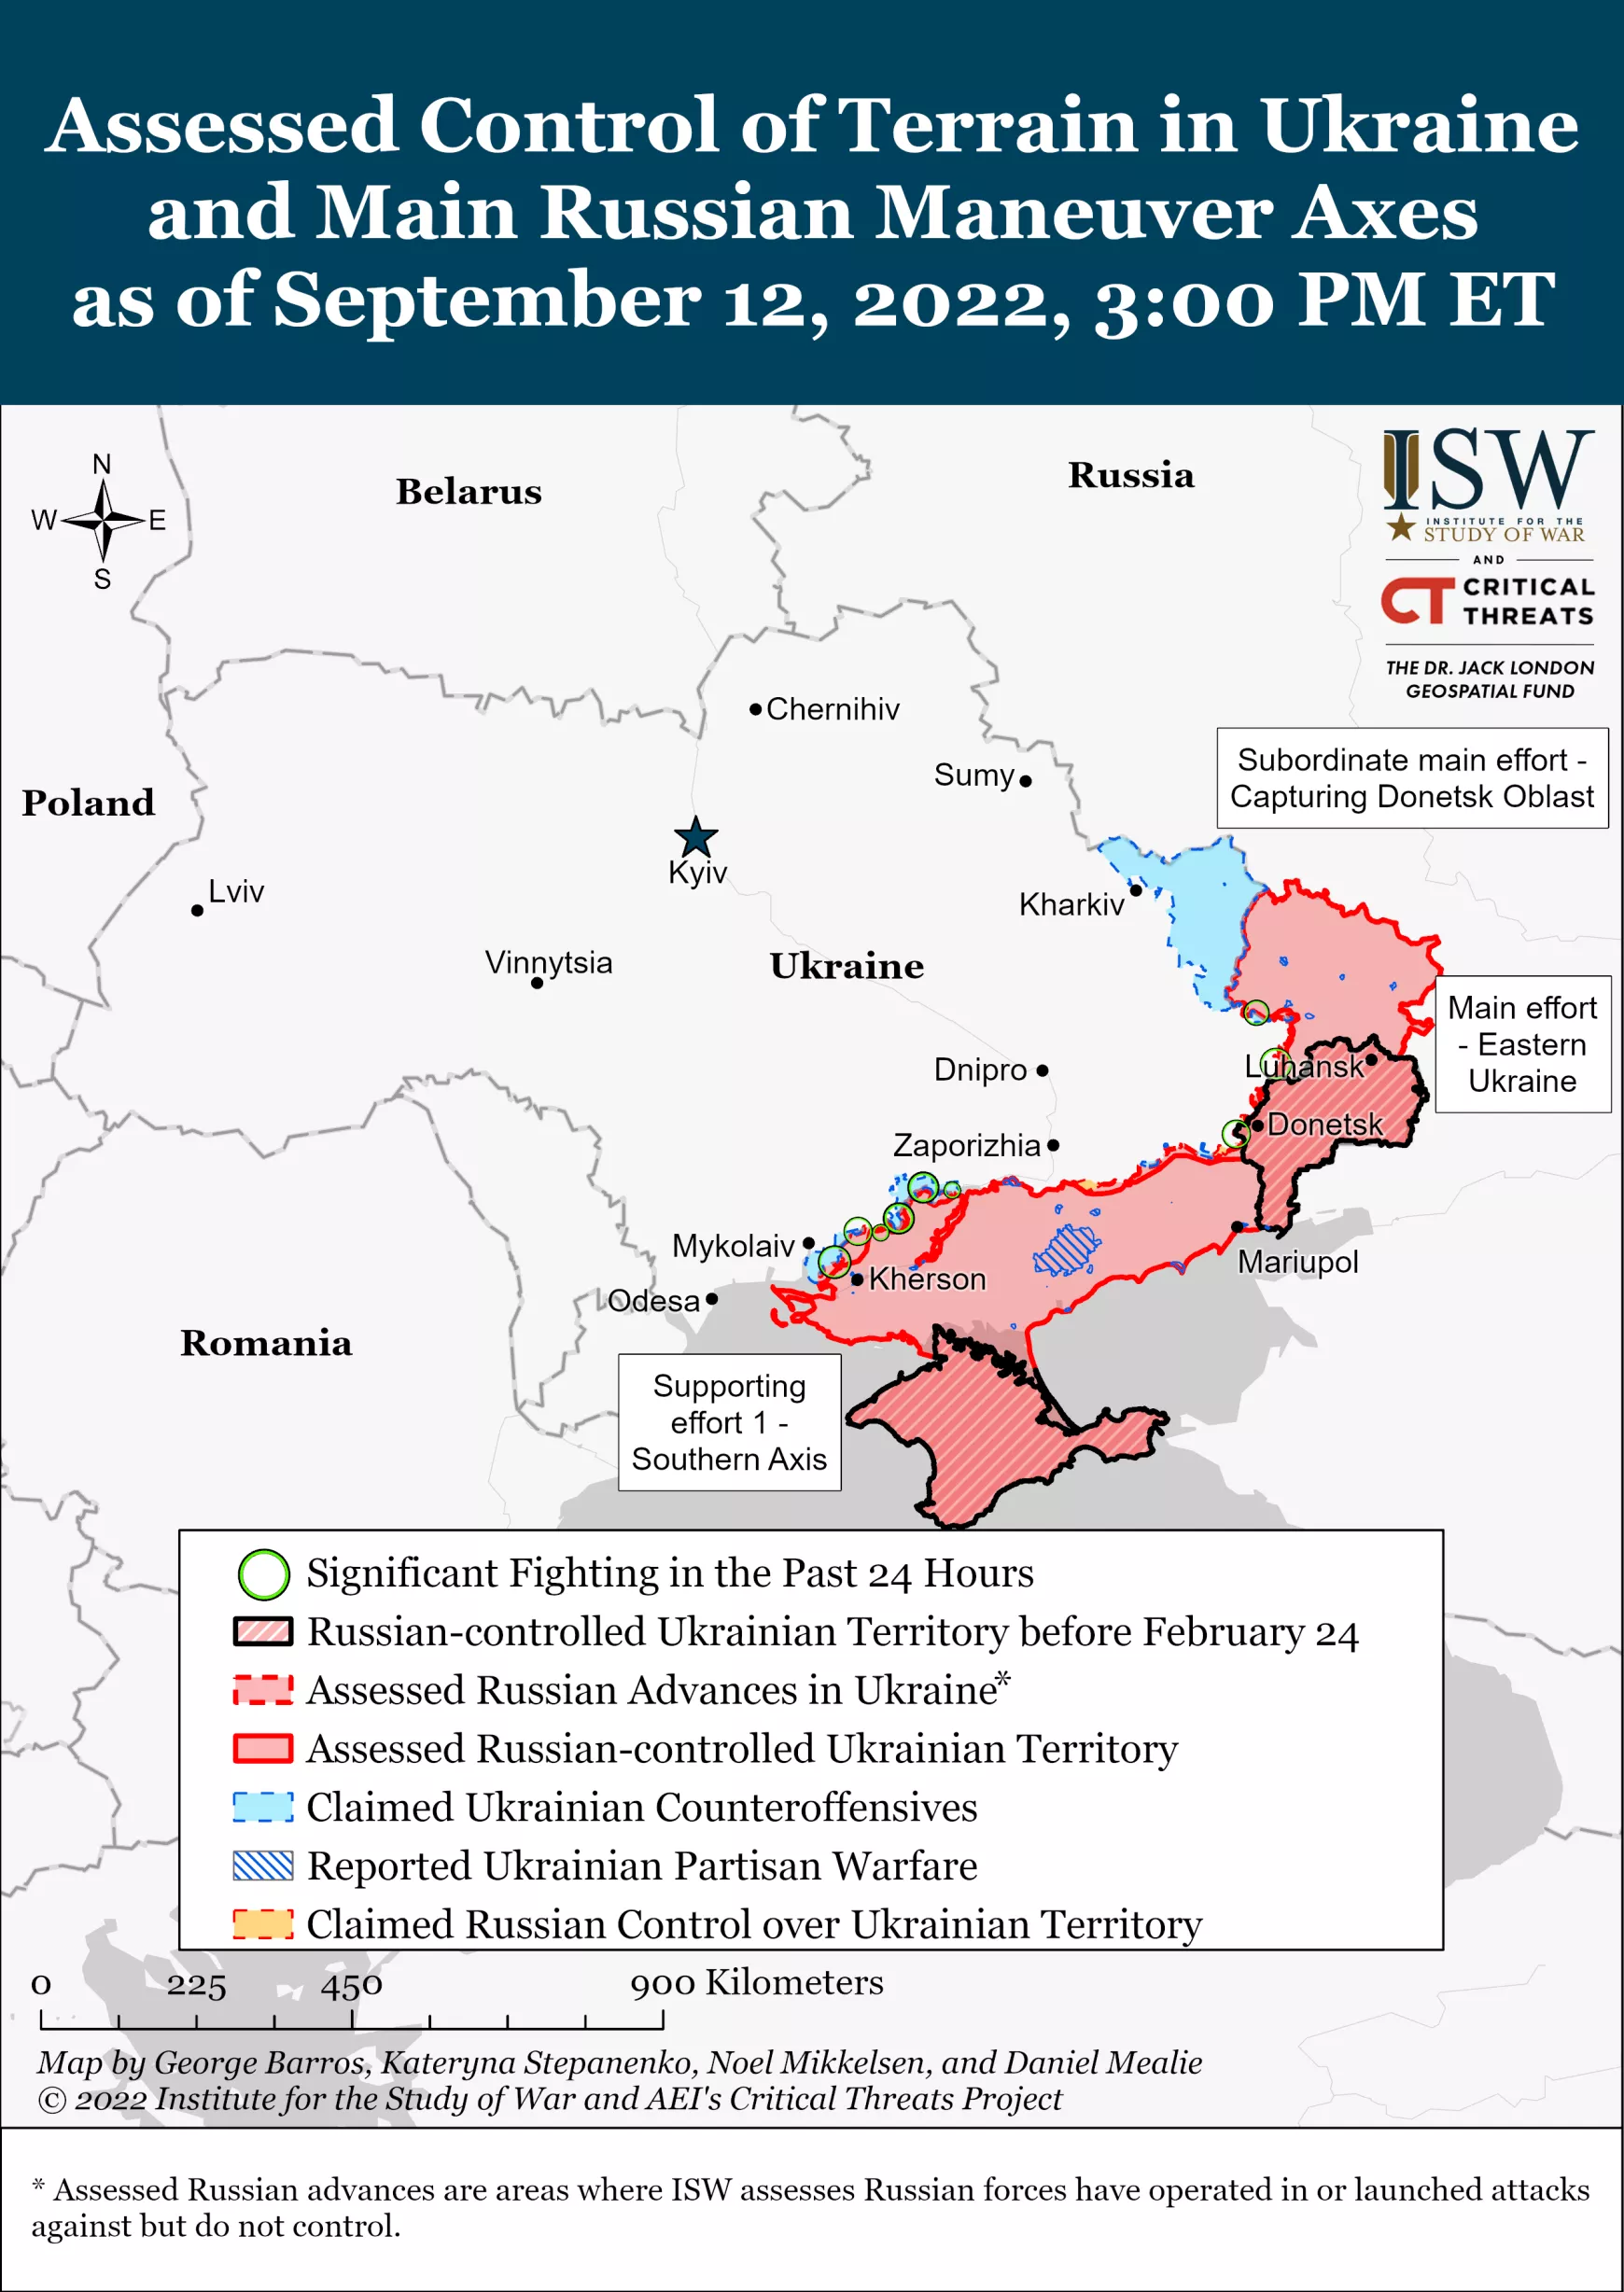 Az ukrán ellentámadás az amerikai Institute for the Study of War térképén